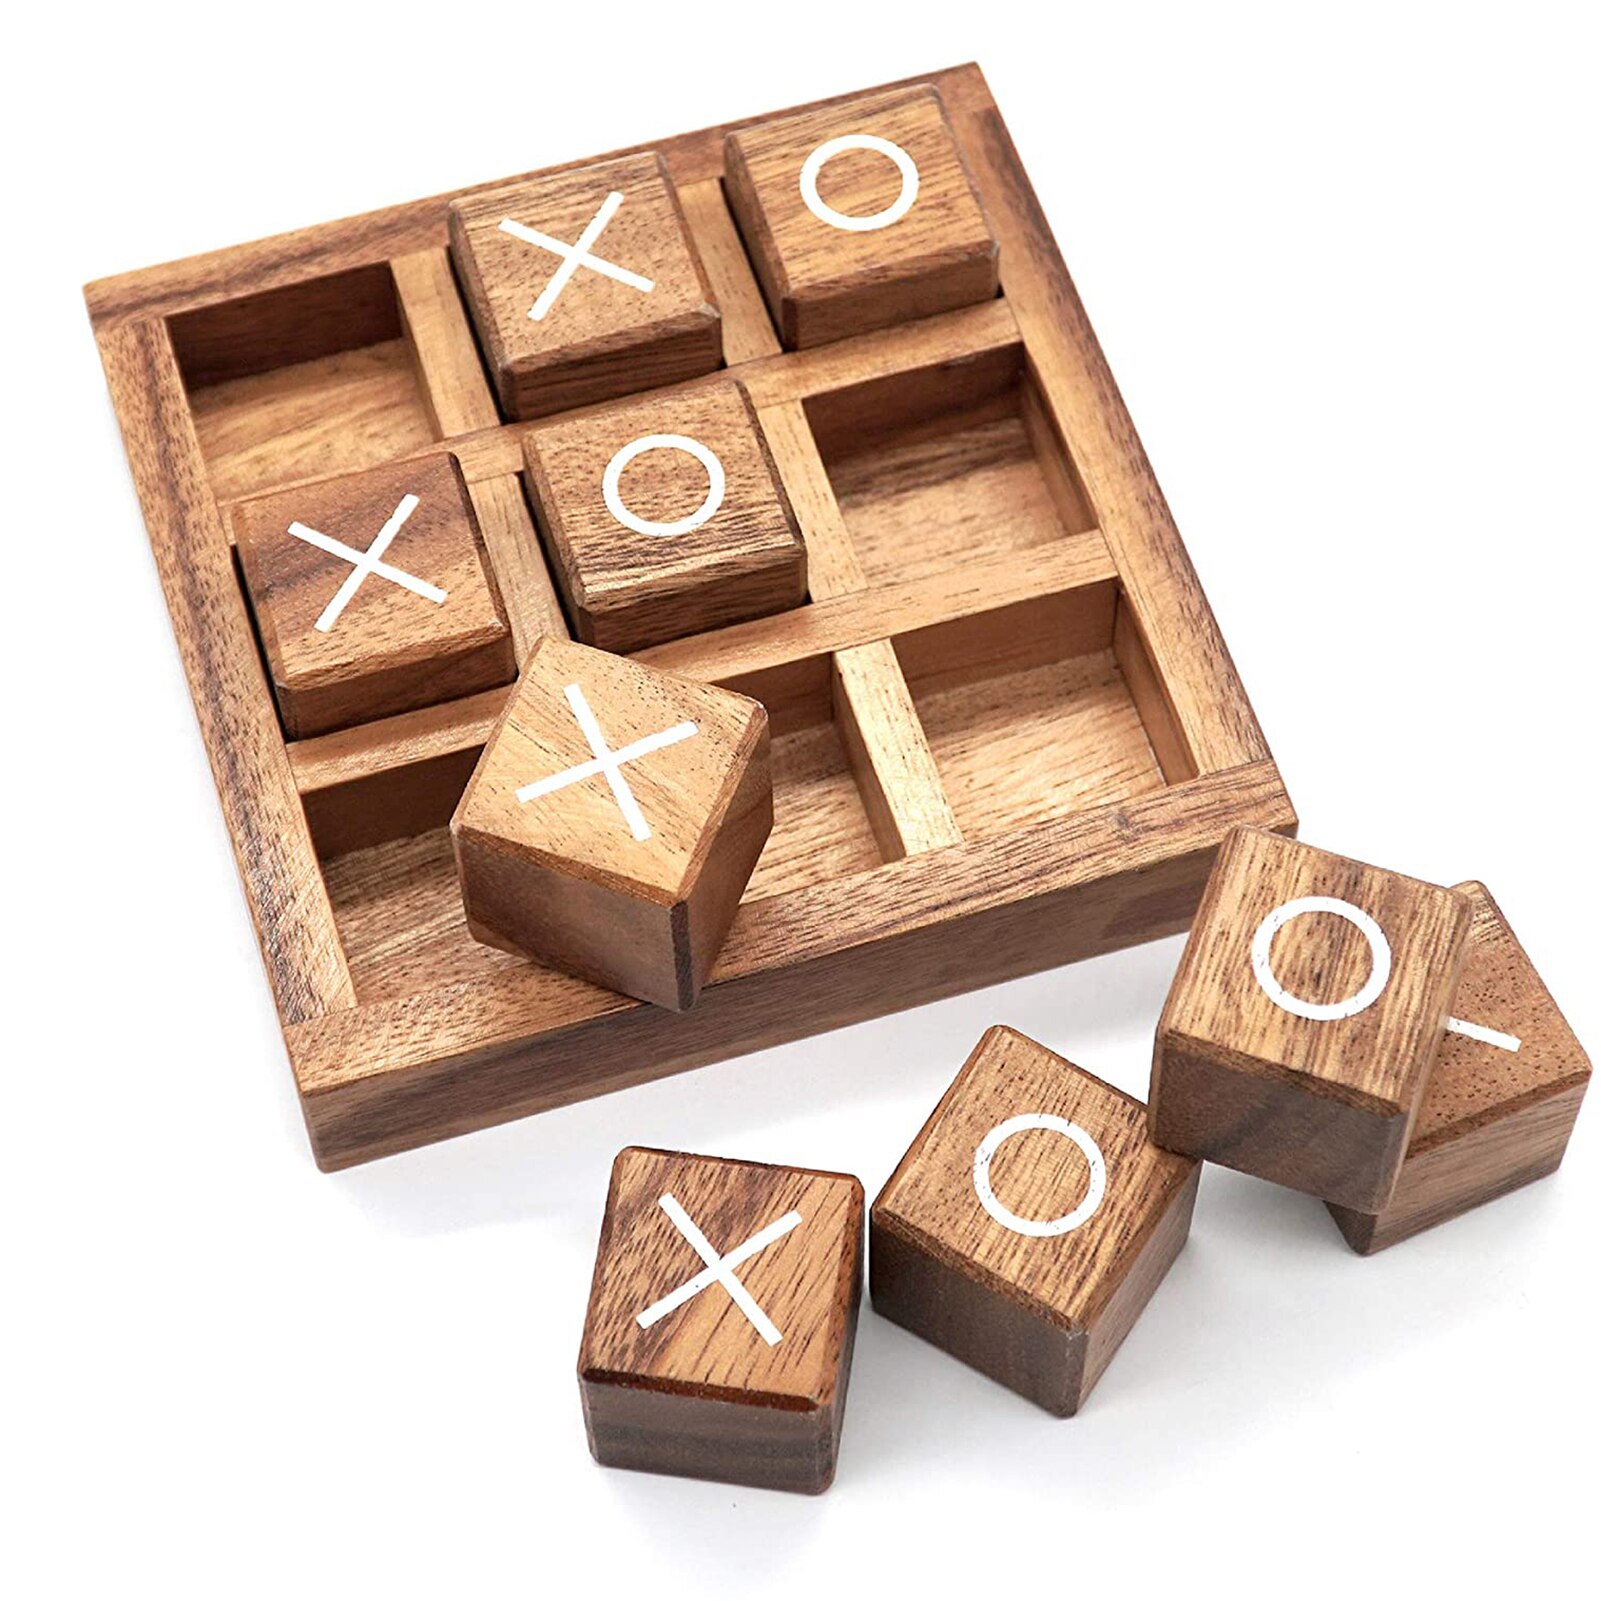 1 Pcs Ouder-kind Interactie Leisure Board Game Ox Schaken Grappige Ontwikkelen Intelligente Educatief Speelgoed